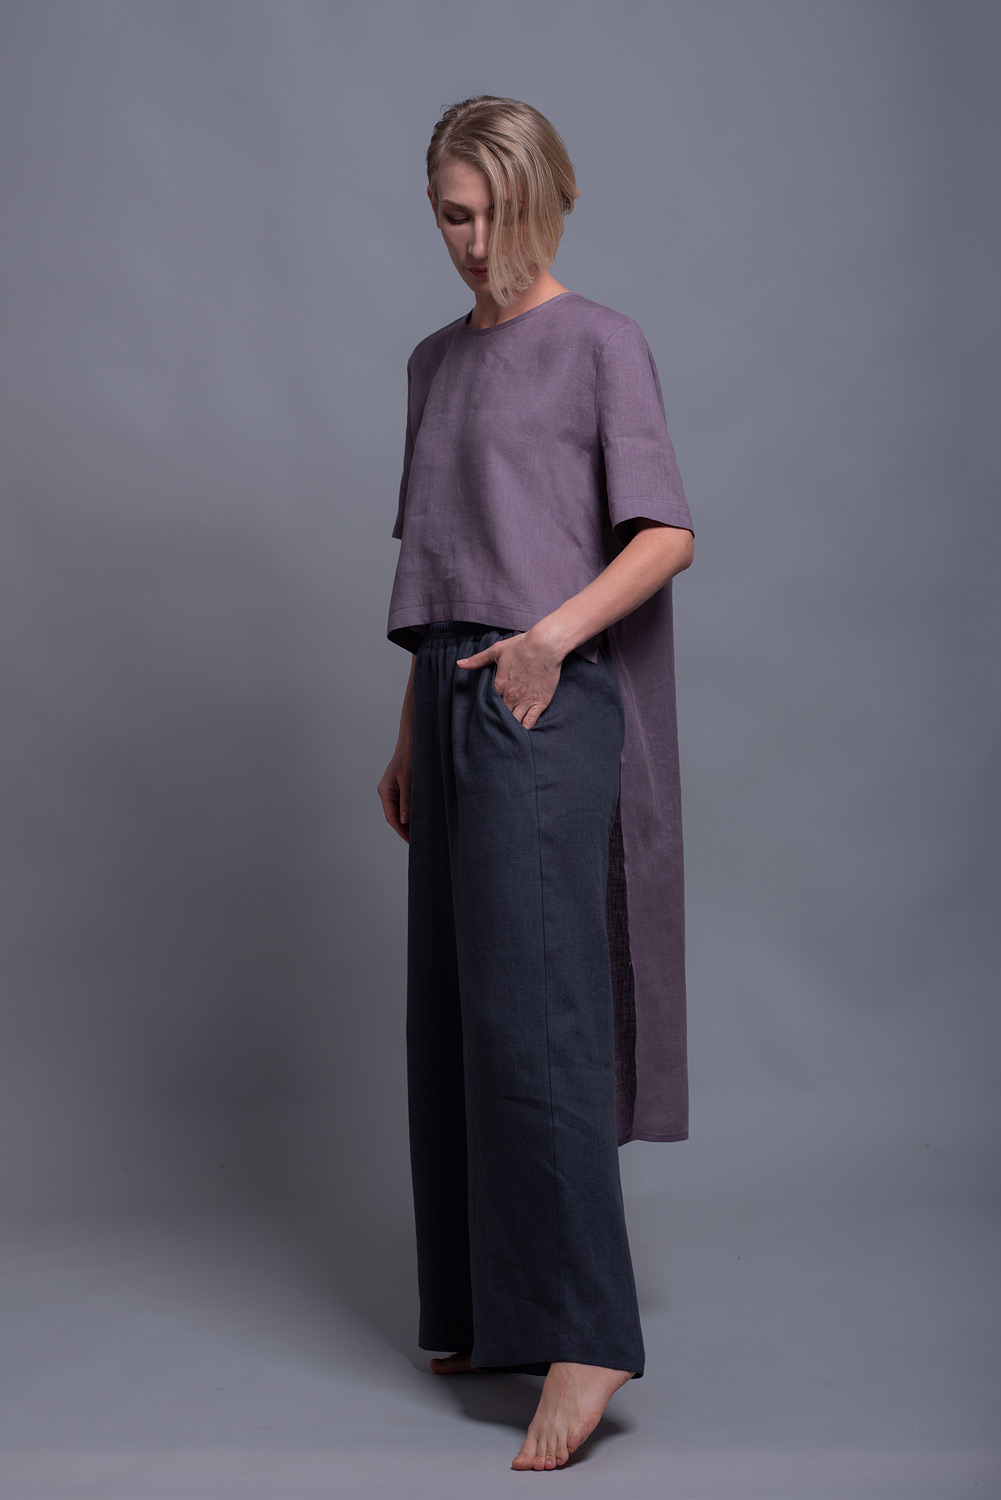 Short Front Long Back Linen Top | Women's Linen Clothes | Shantima